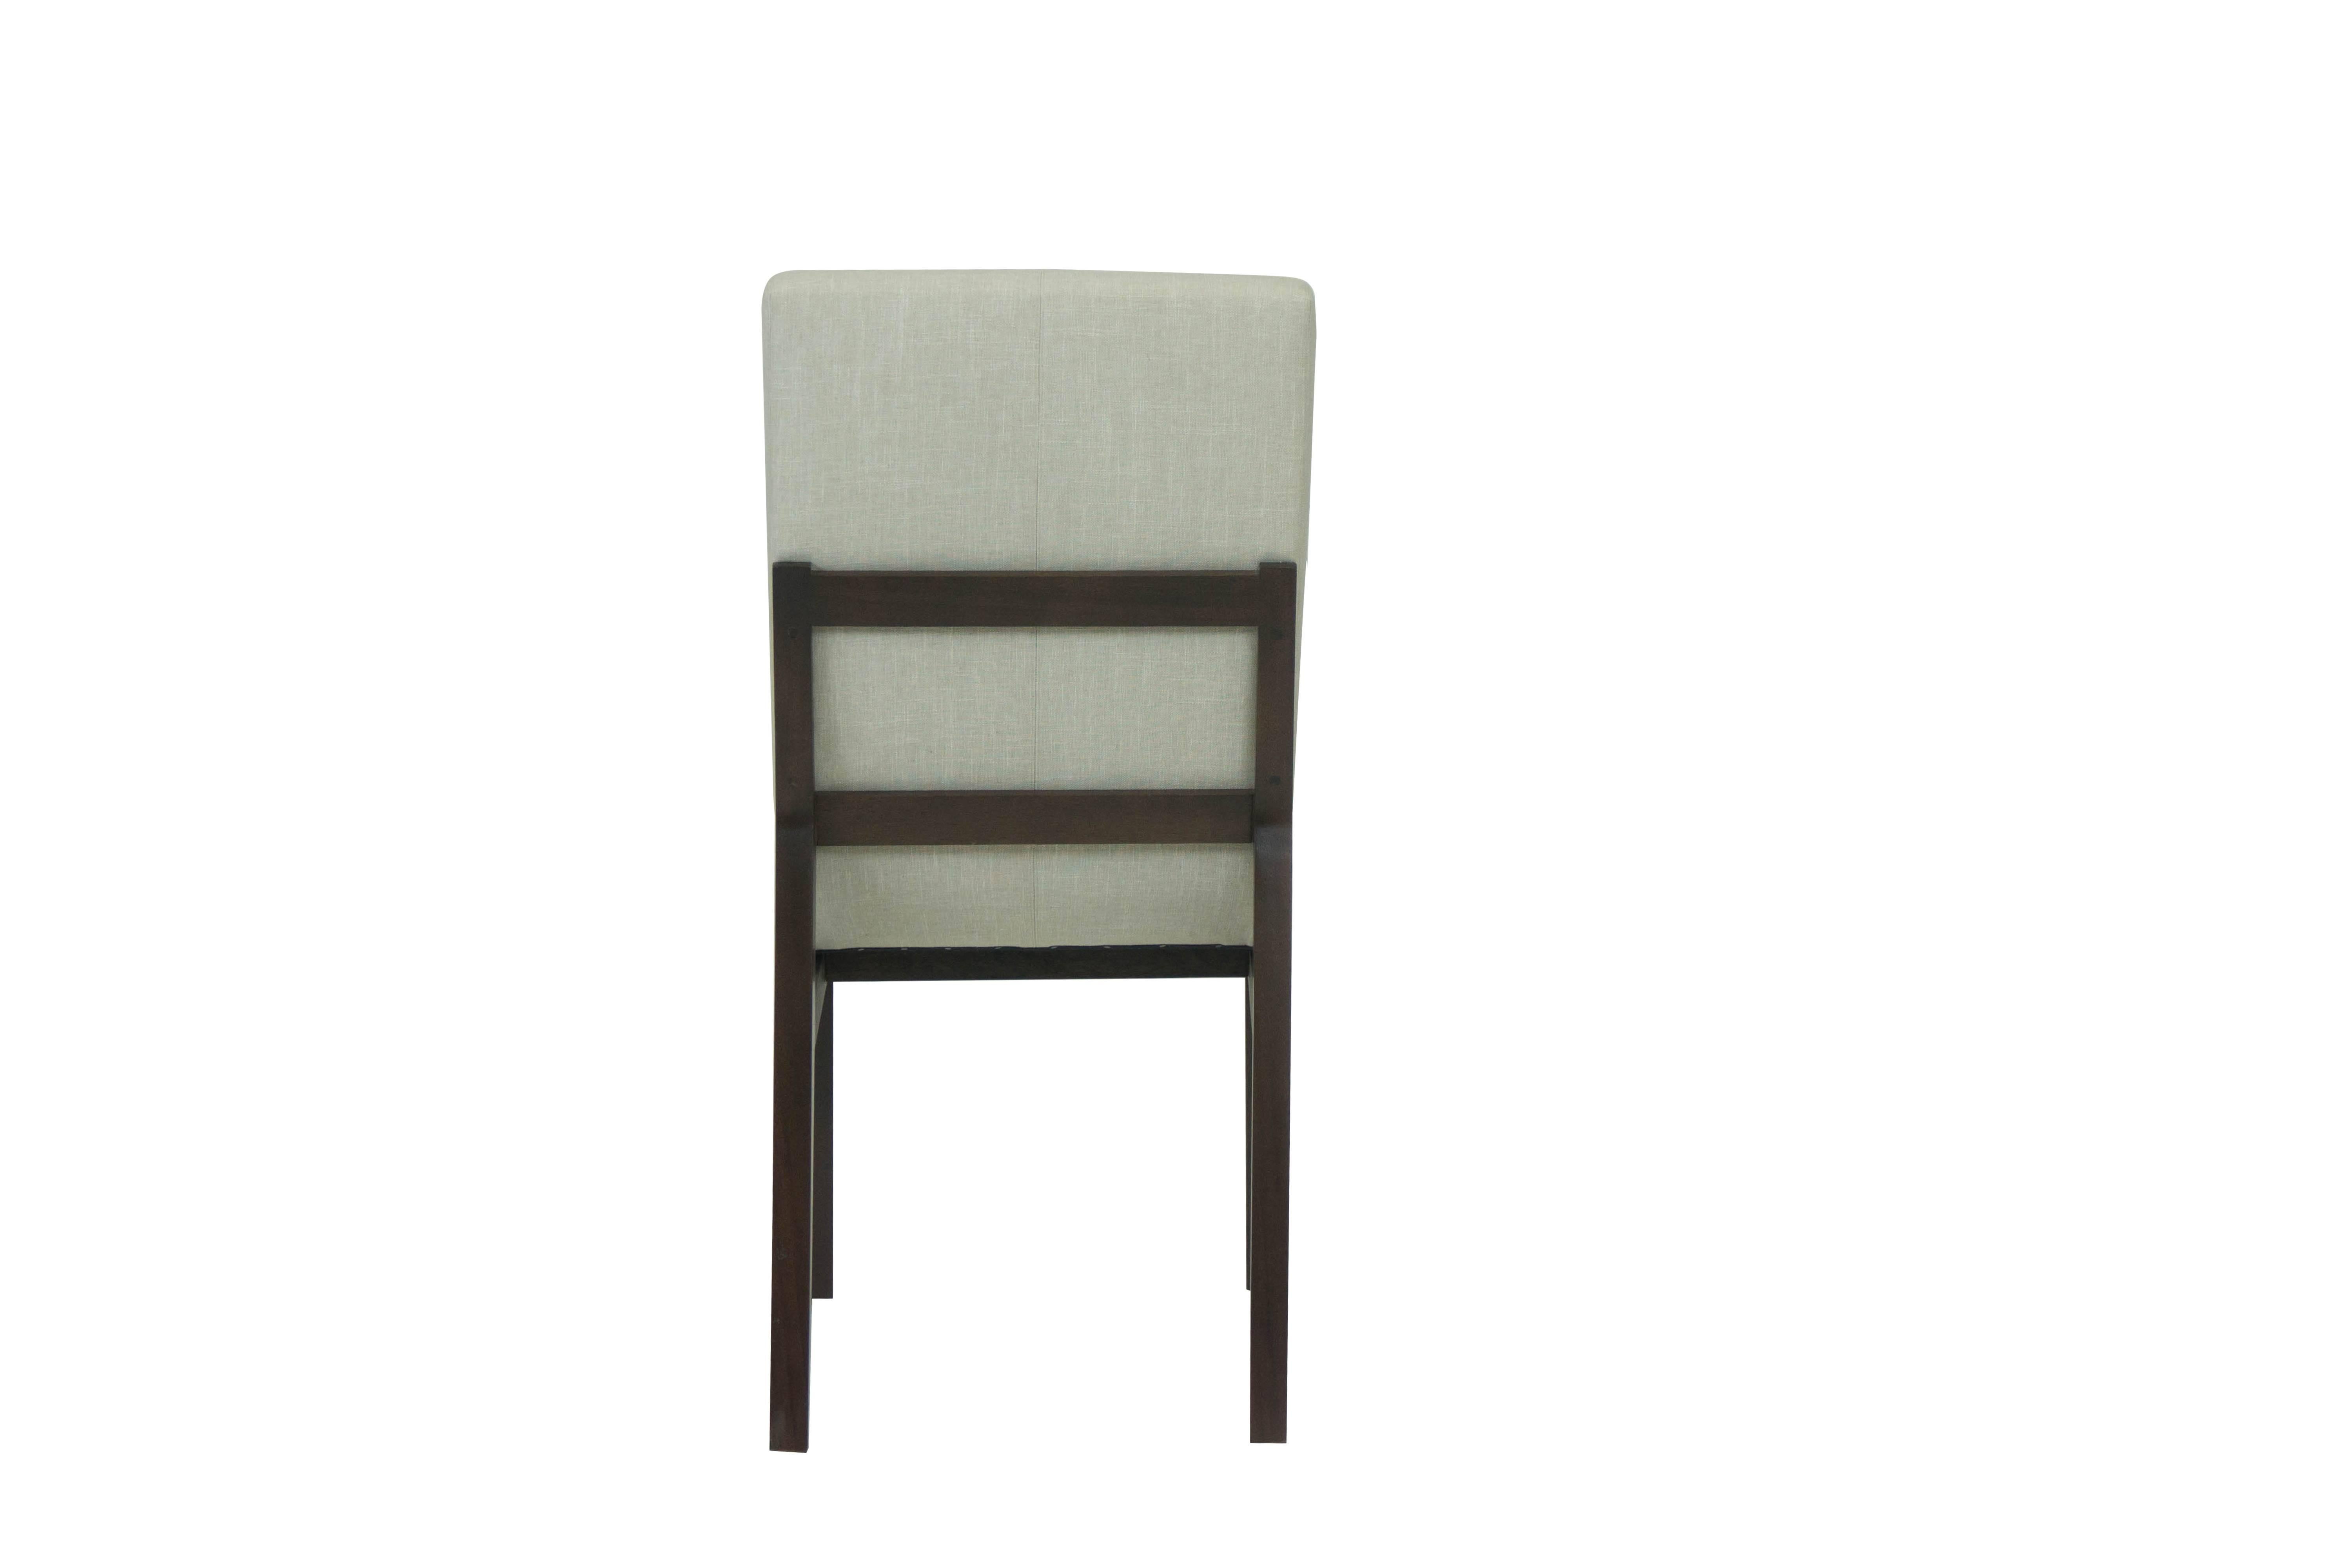 La principale caractéristique de cette chaise de salle à manger est sa forme inclinée. En général, les chaises de salle à manger sont conçues pour nous maintenir en position verticale et en position de 